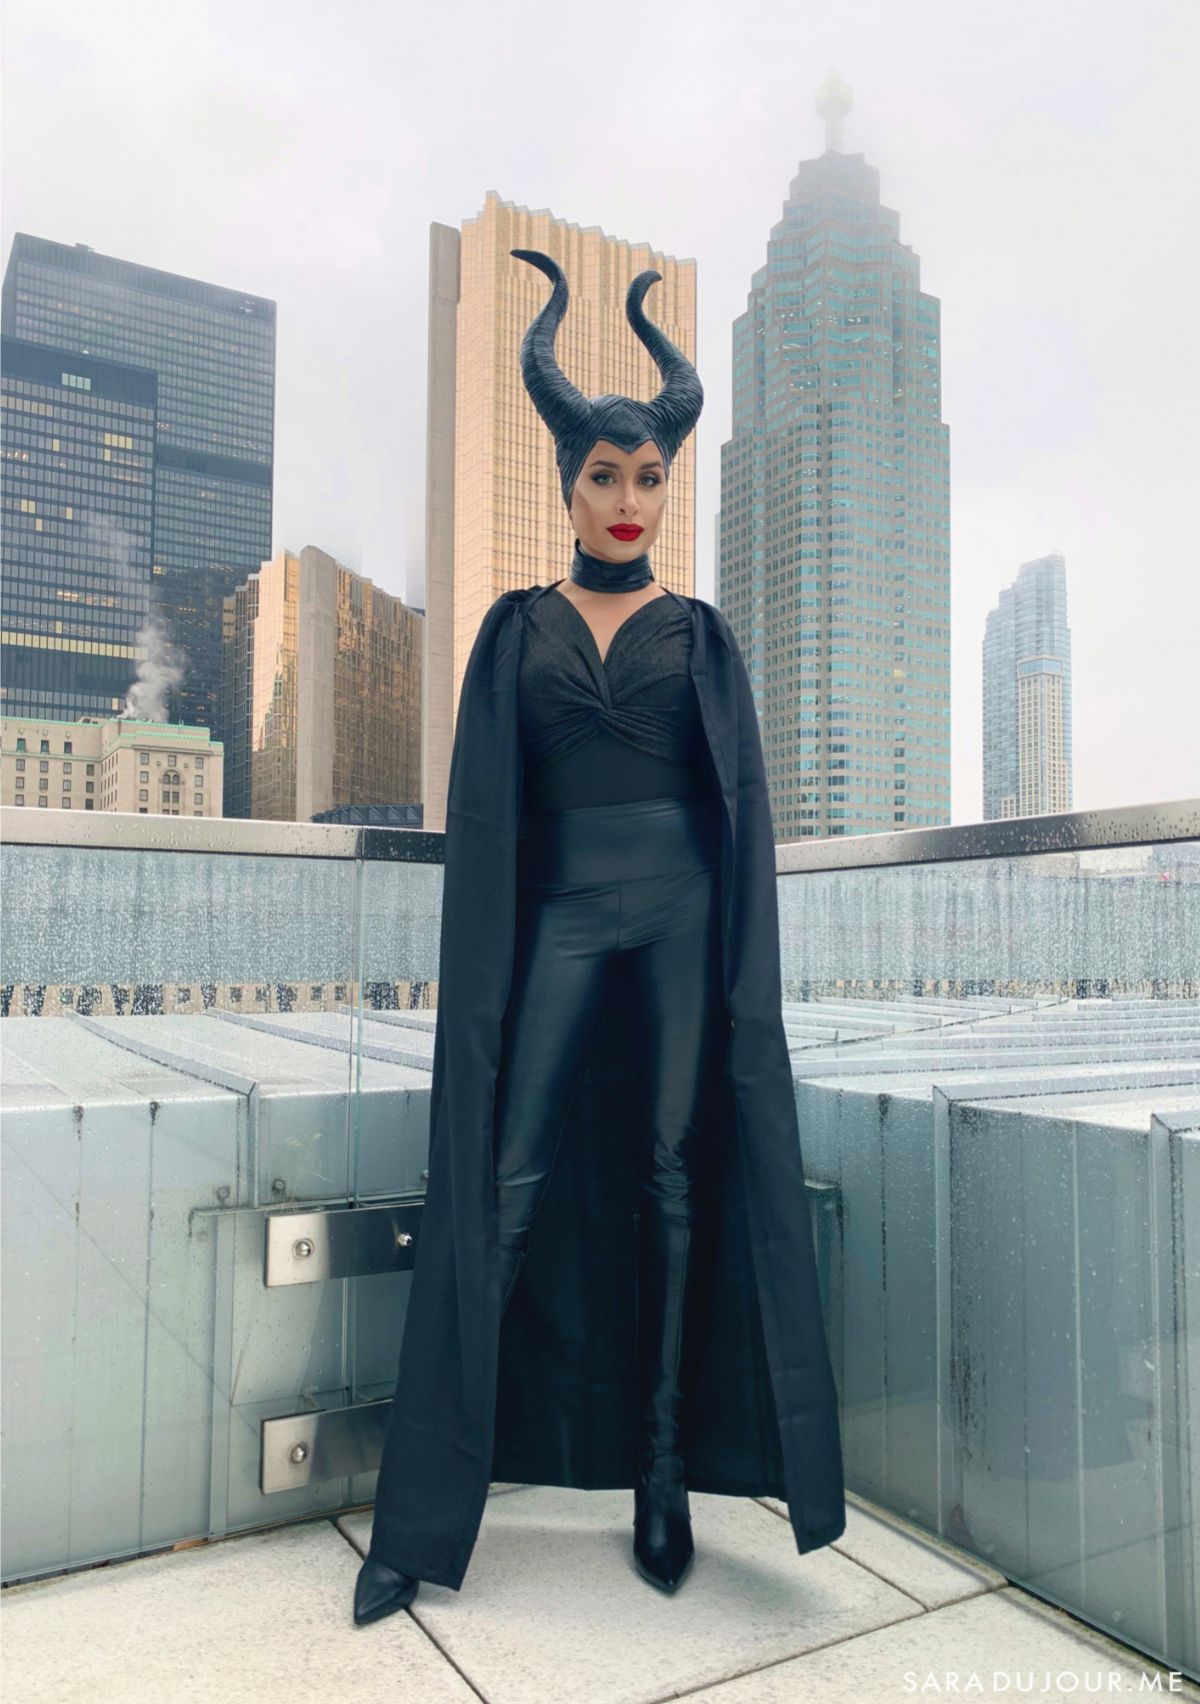 Maleficent villain costume